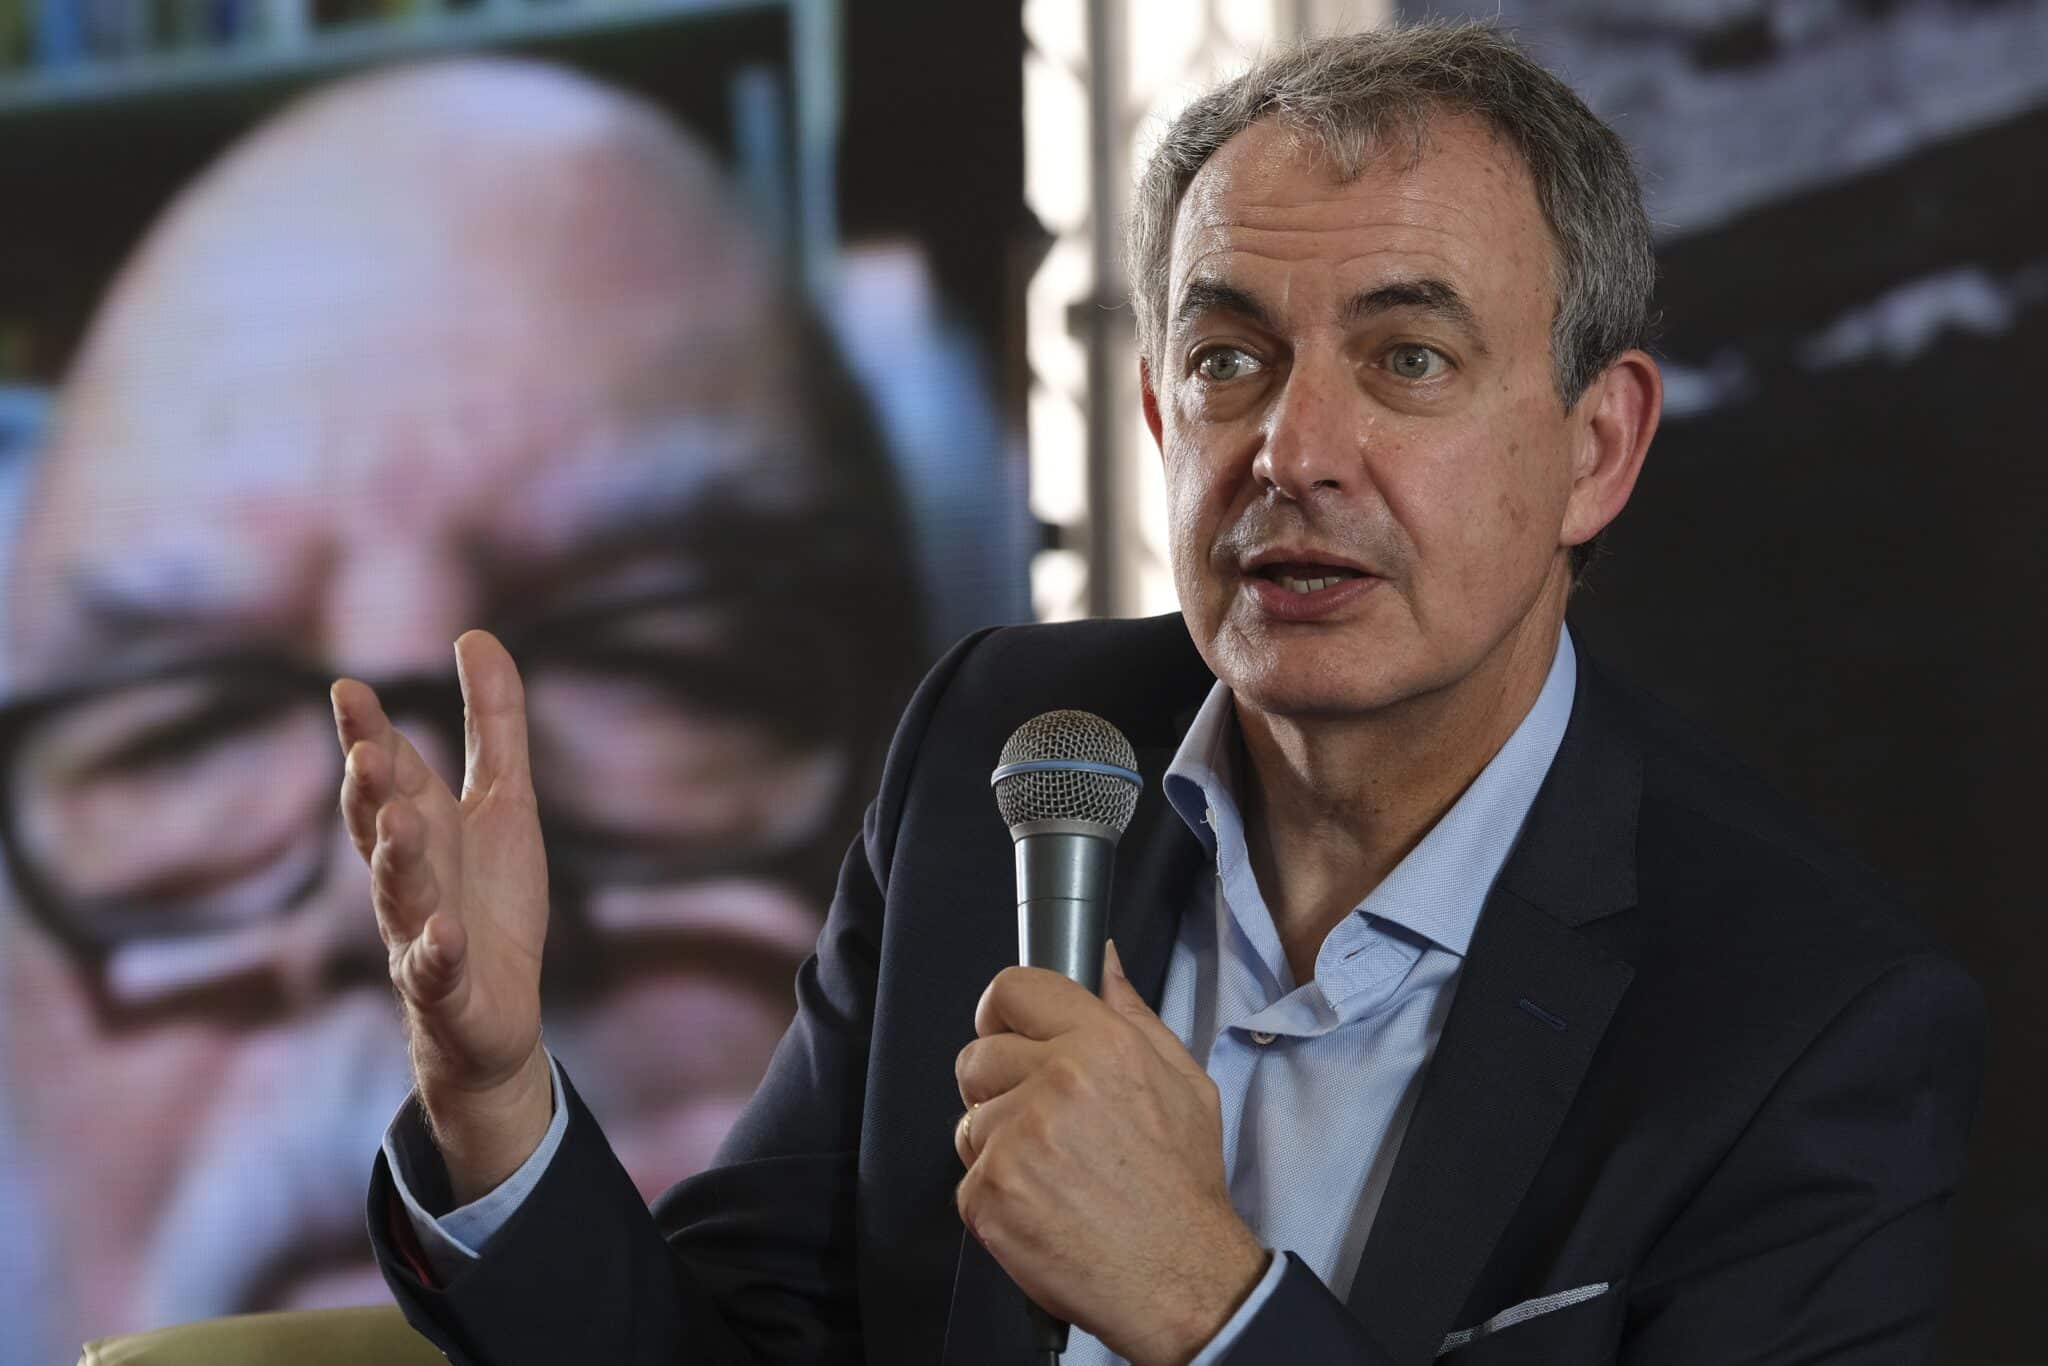 El expresidente del Gobierno José Luis Rodríguez Zapatero, este sábado durante la Semana Negra de Gijón, en el conversatorio "Borges, una literatura"